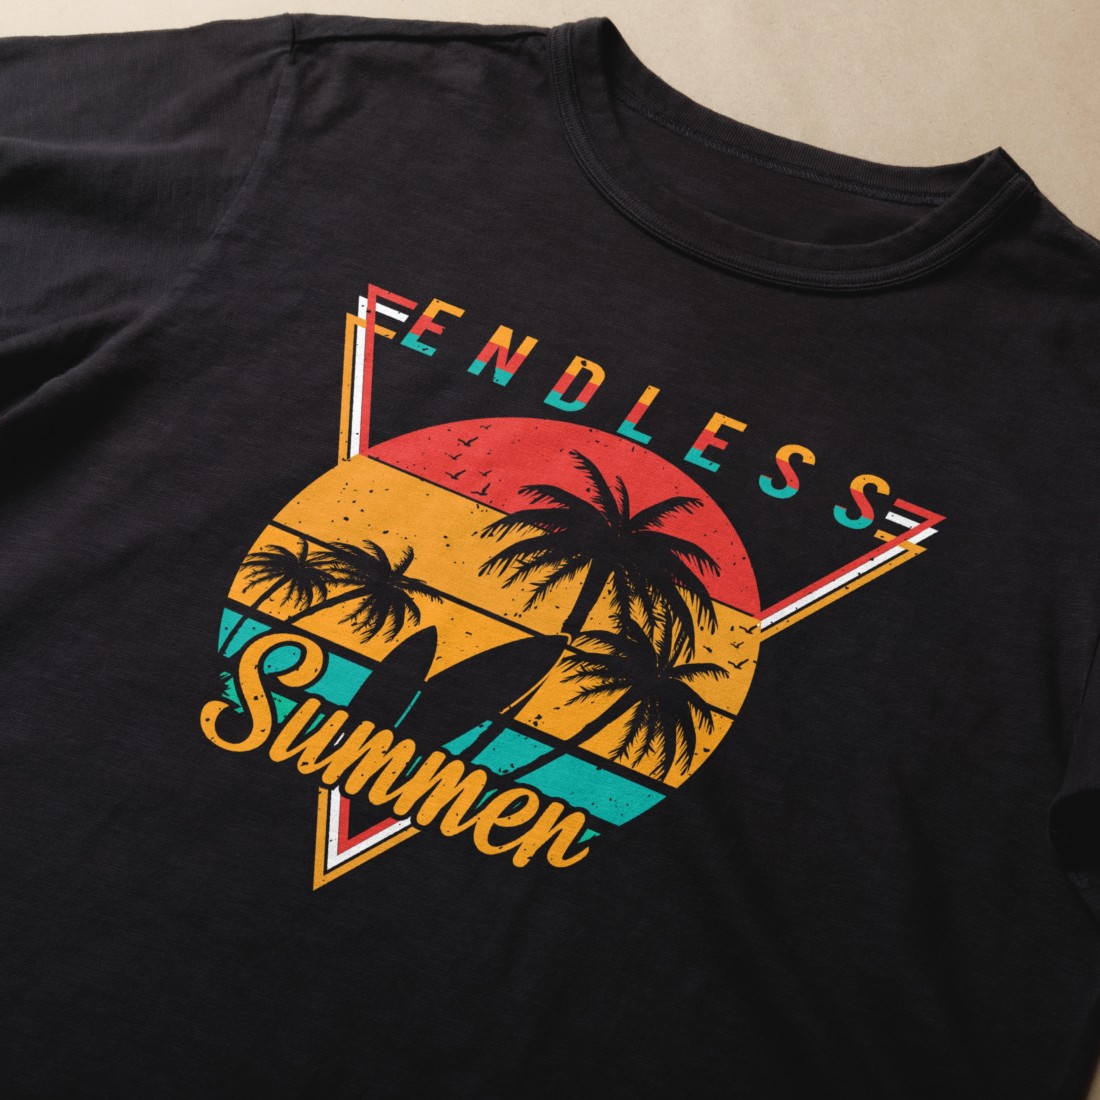 endless summer t shirt design 1 382